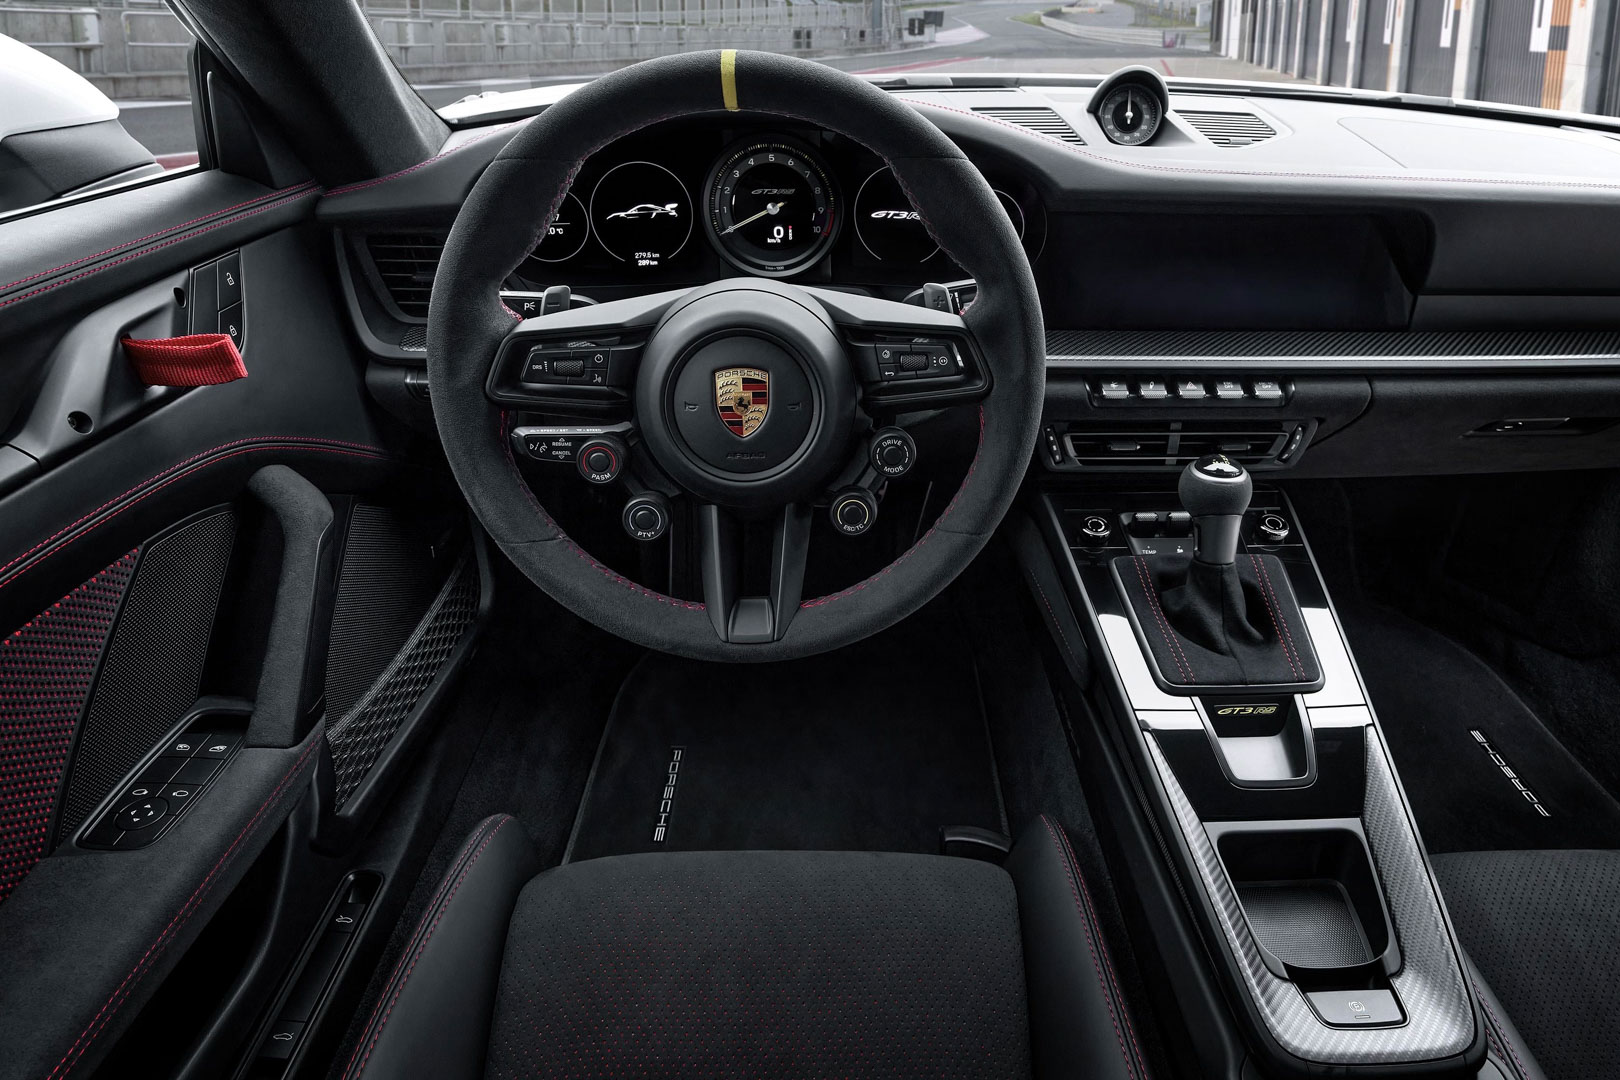 Chi tiết Porsche 911 GT3 RS thế hệ mới - ảnh 13